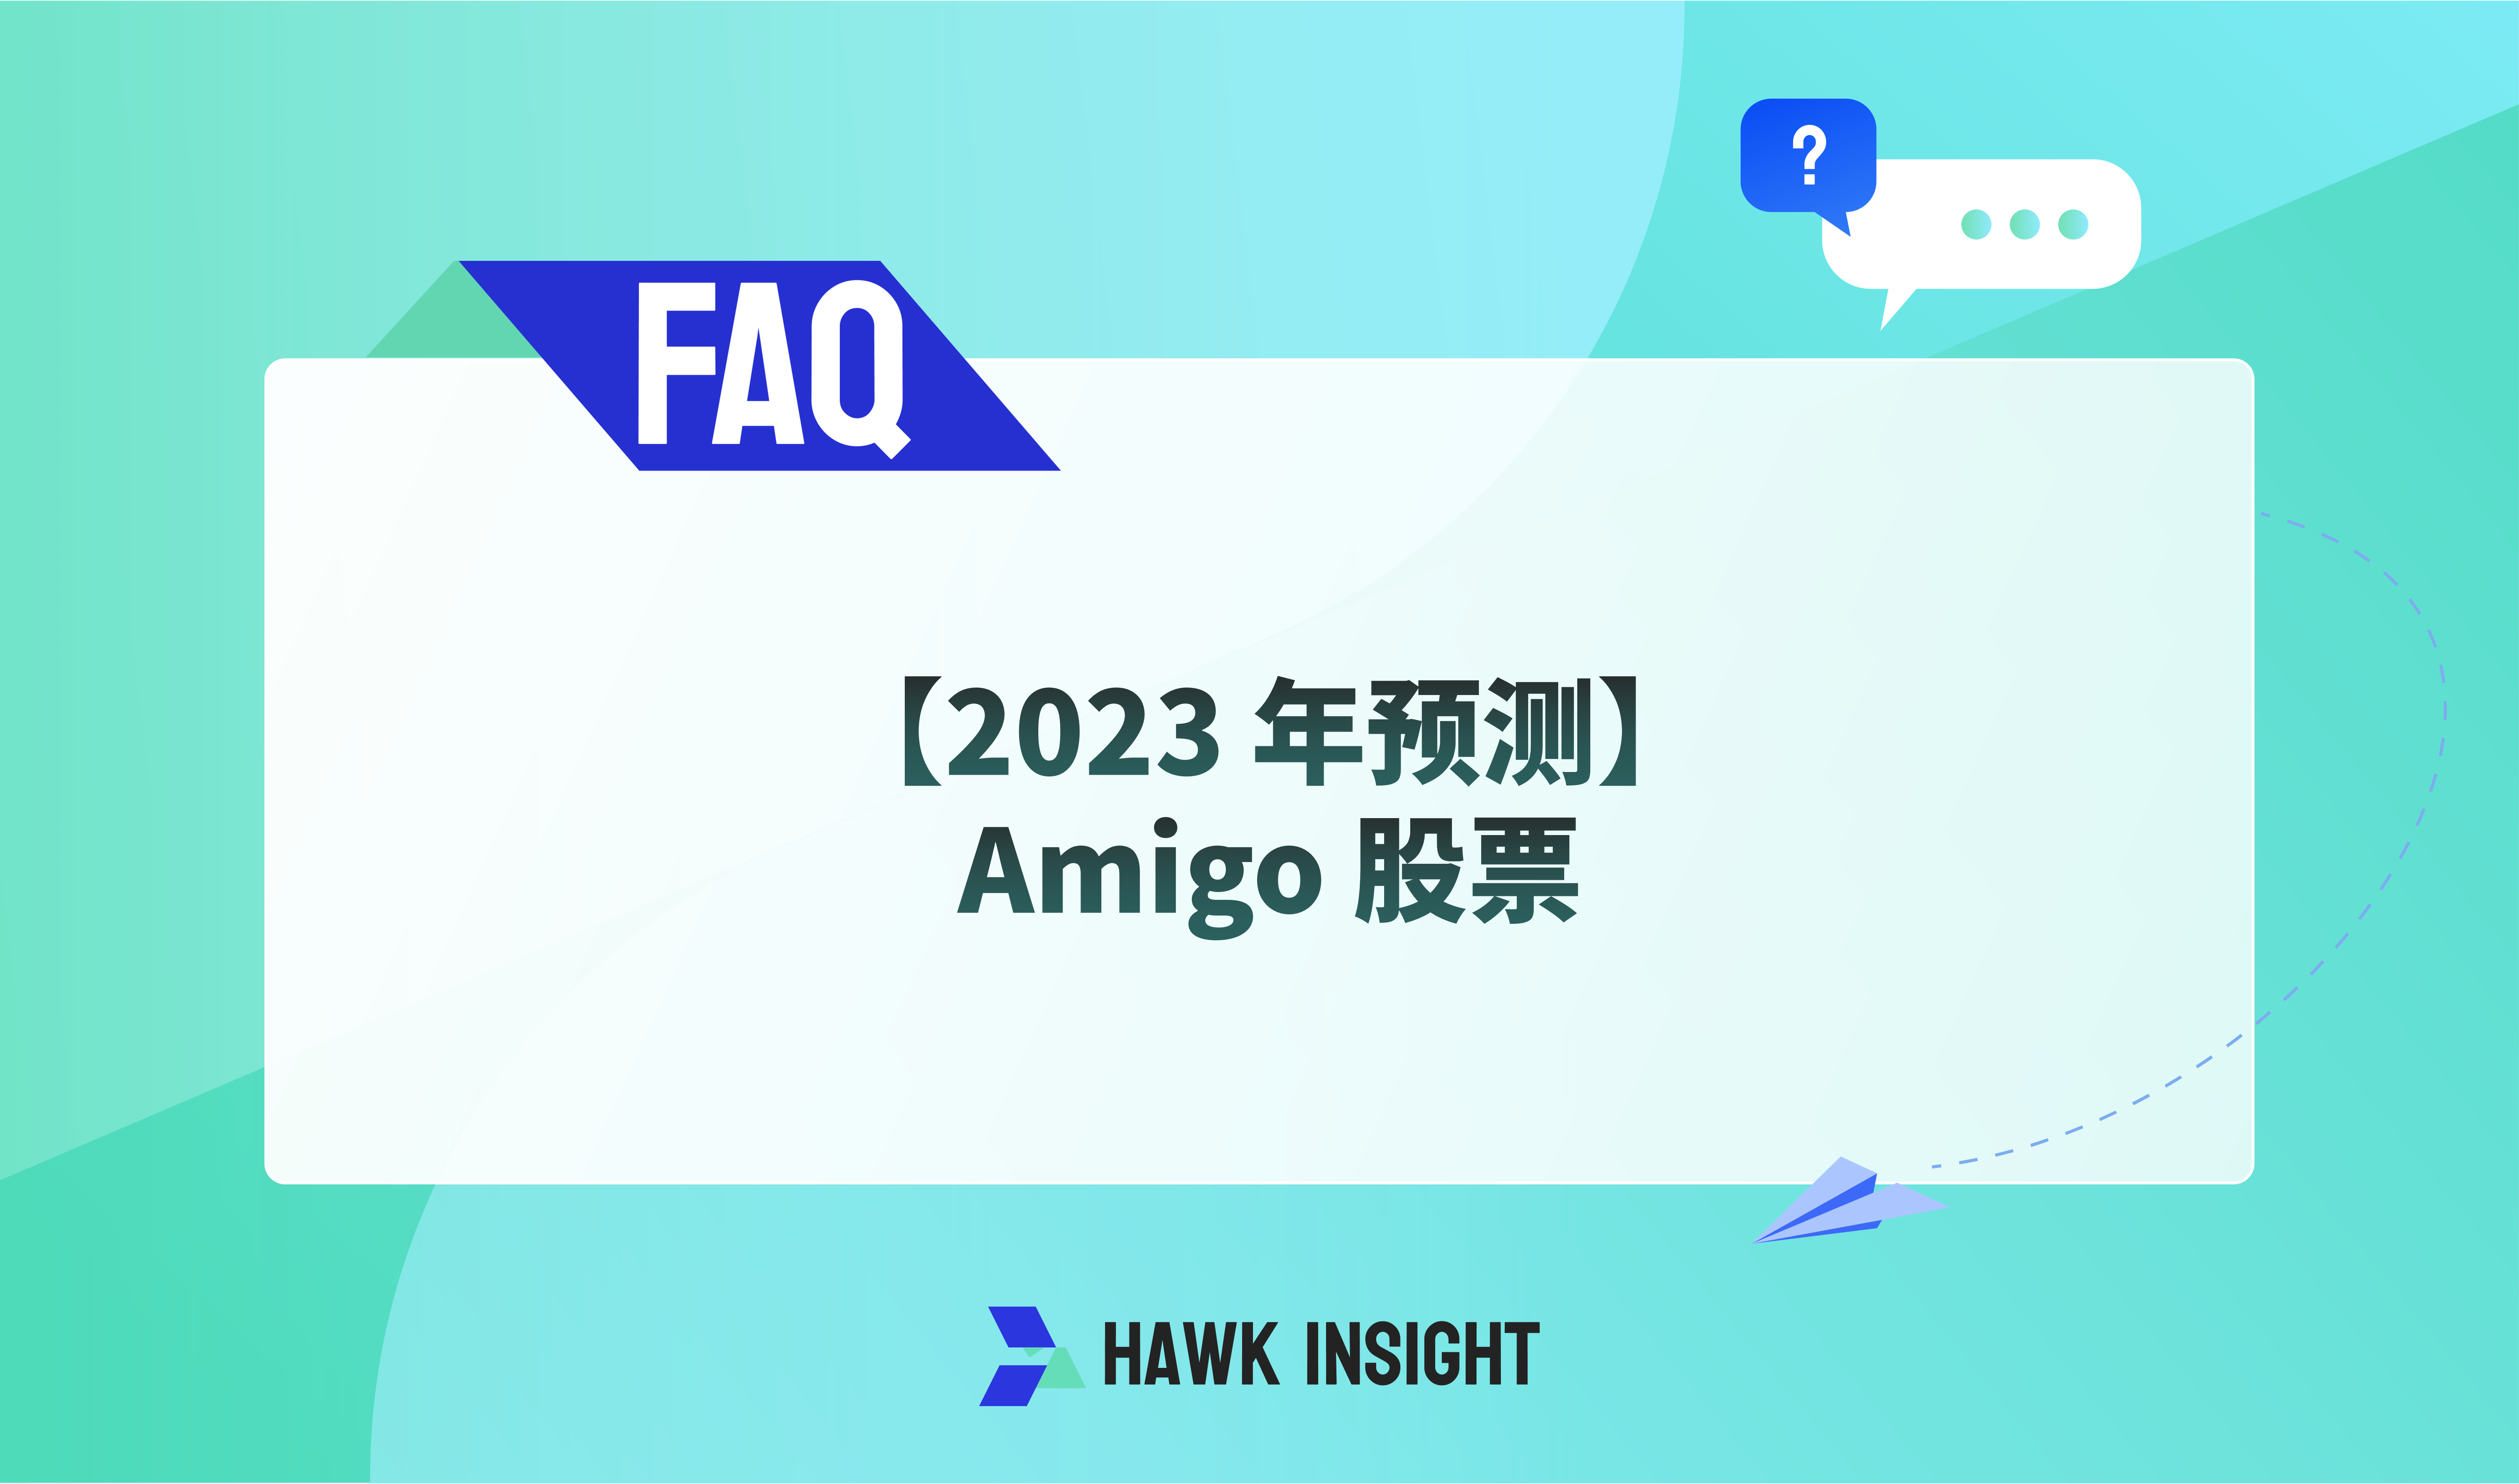 [2023 Forecast] Amigo Stock